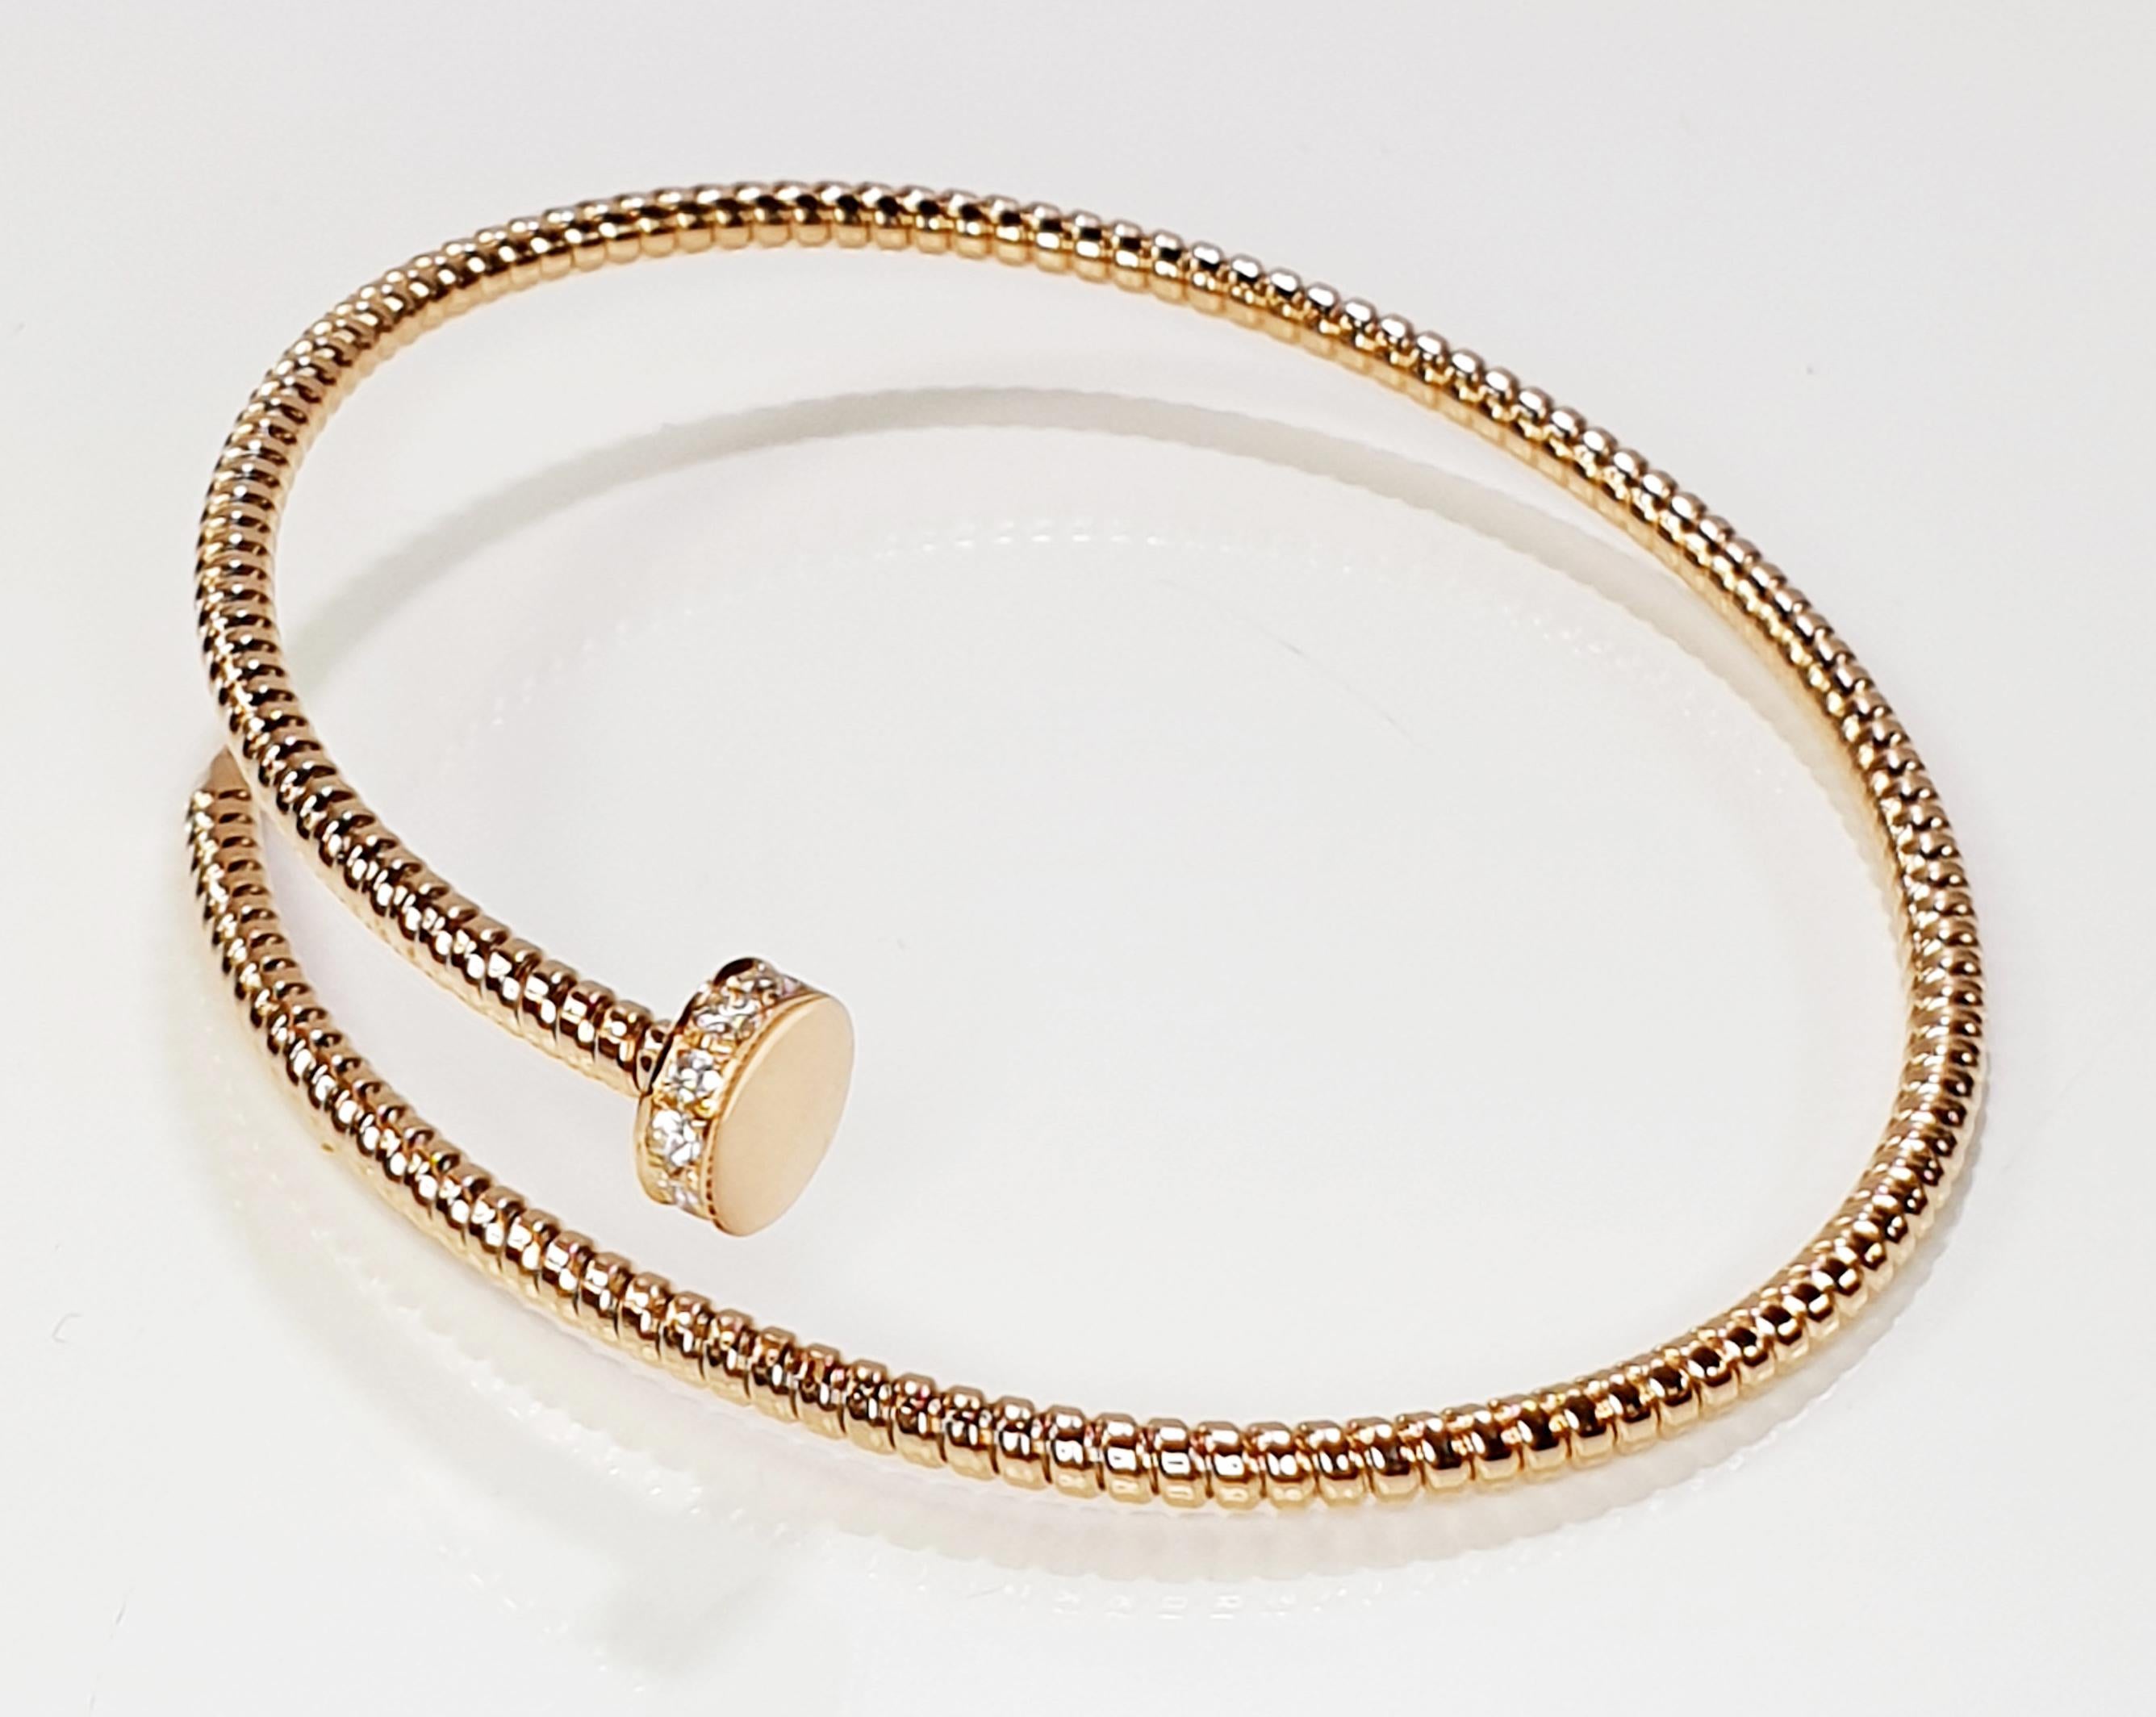 Bracelet flexible et adaptable avec fabrication artisanale en tubogas qui s'adapte aux poignets de 7,87 pouces de taille moyenne à grande.
Disponible en trois couleurs d'or, jaune, blanc et rose.
Diamants de 6,7GR et 0,15Carat
Fabriqués à Antora,